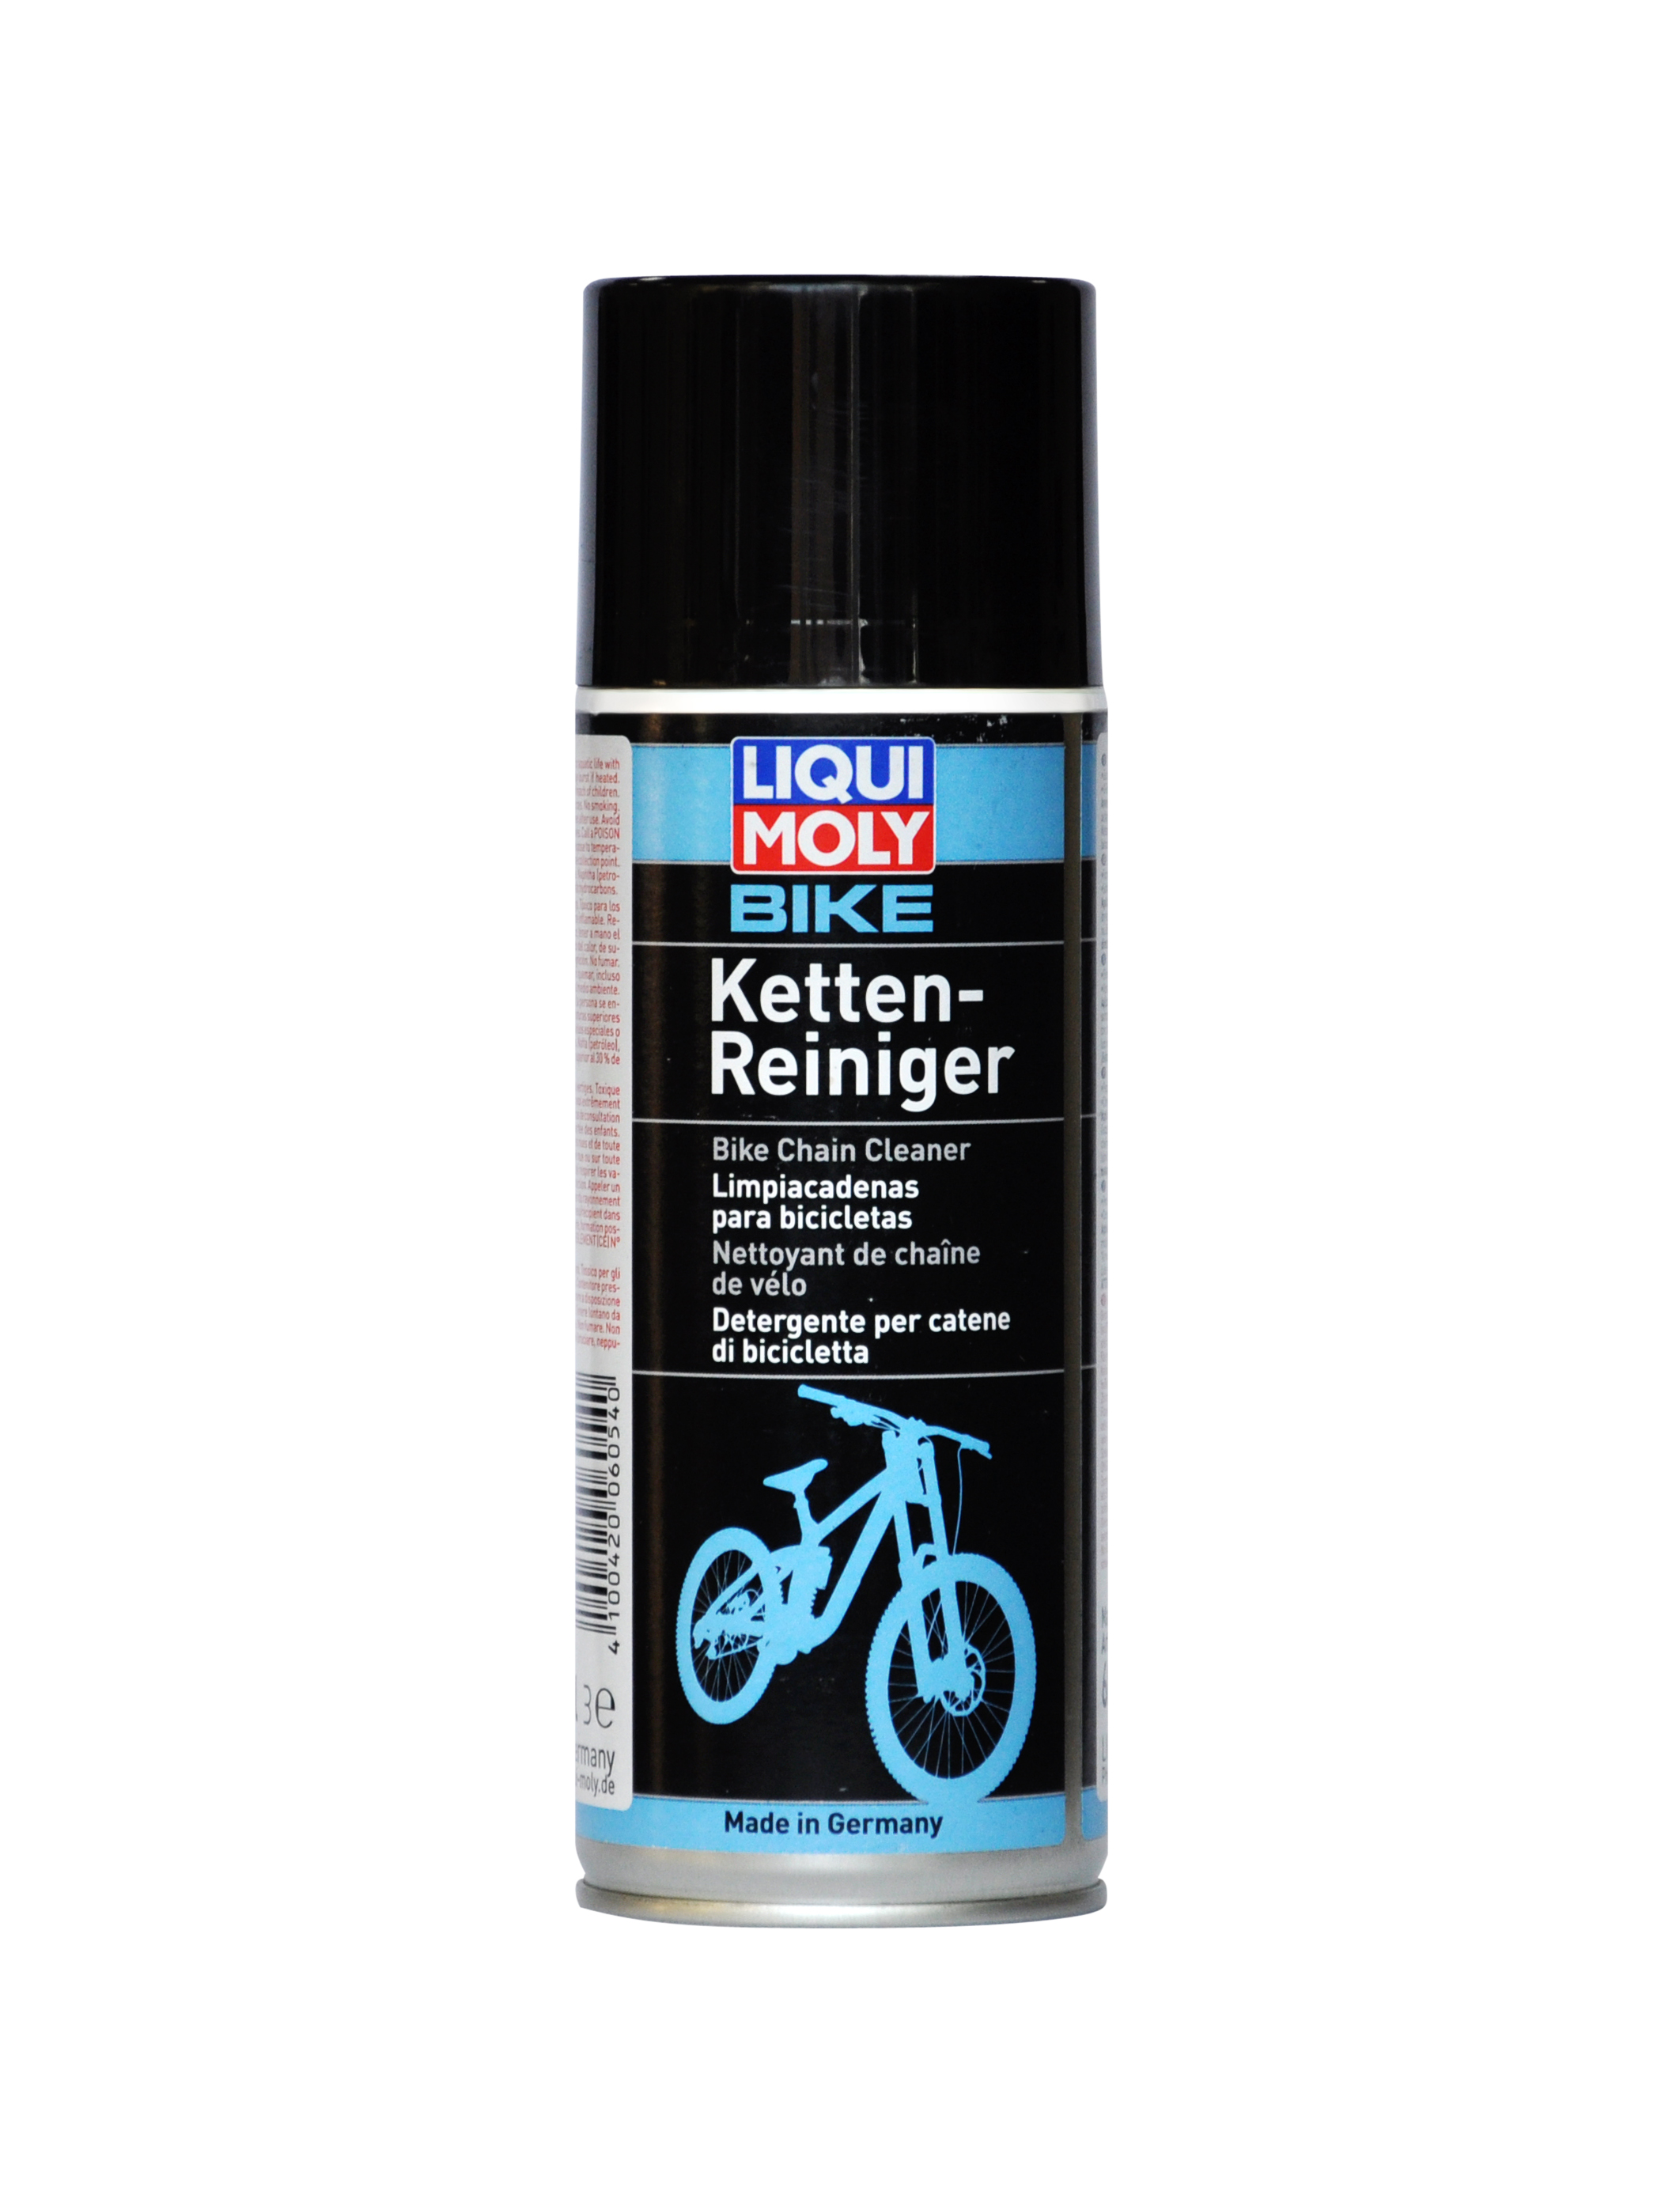 Очиститель тормозов и цепей велосипеда Bike Bremsen- und Kettenreiniger, 400мл - Liqui Moly 6054